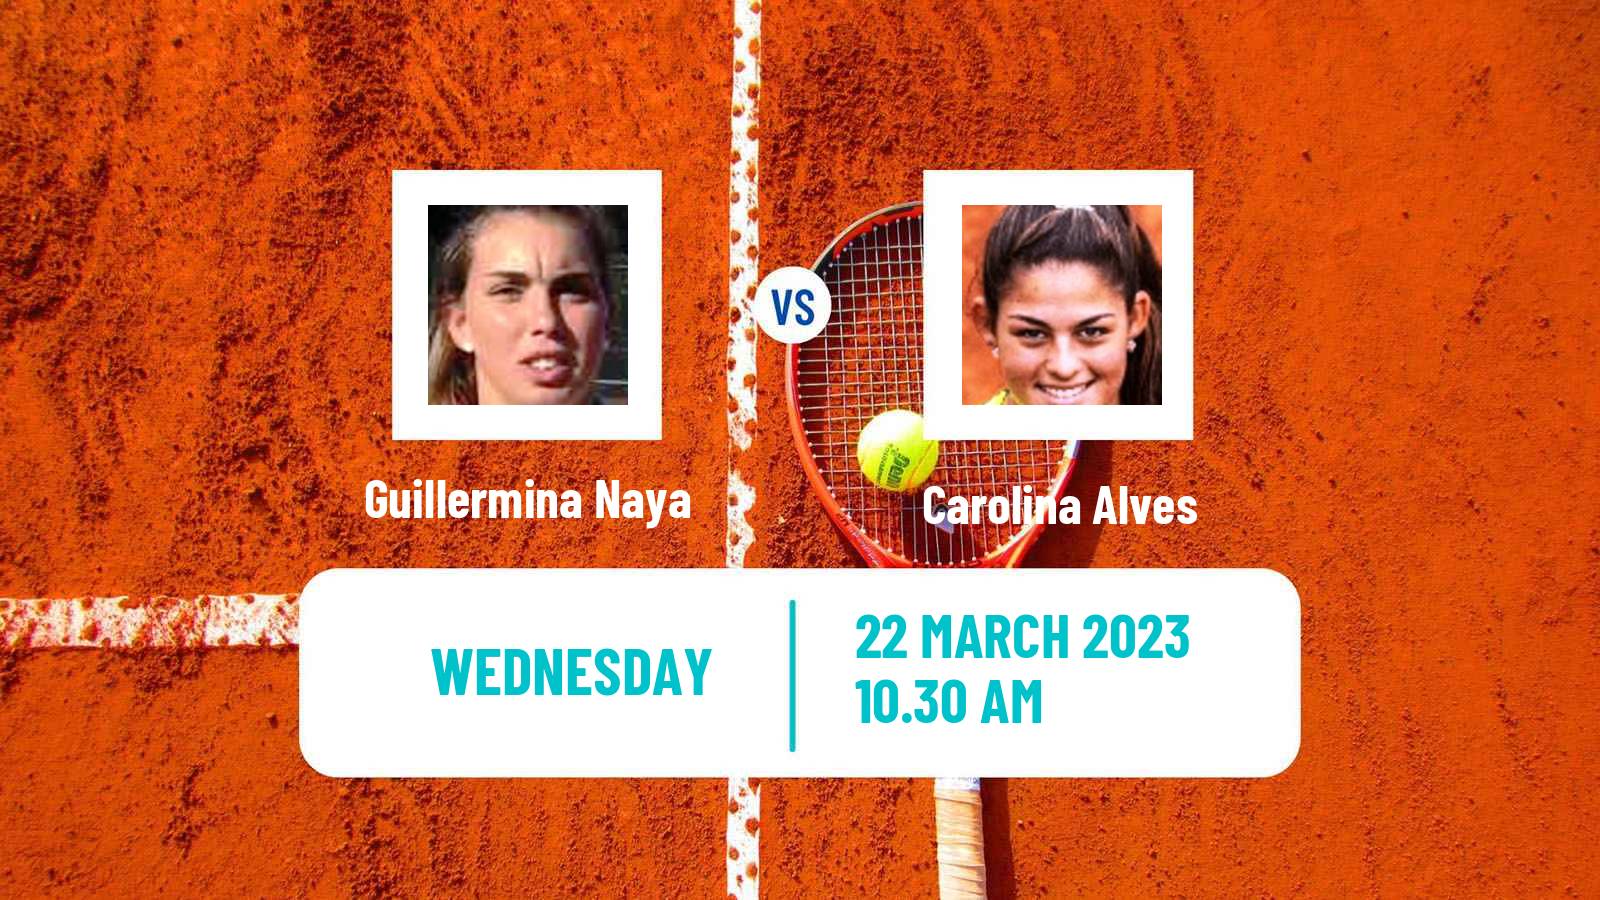 Tennis ITF Tournaments Guillermina Naya - Carolina Alves